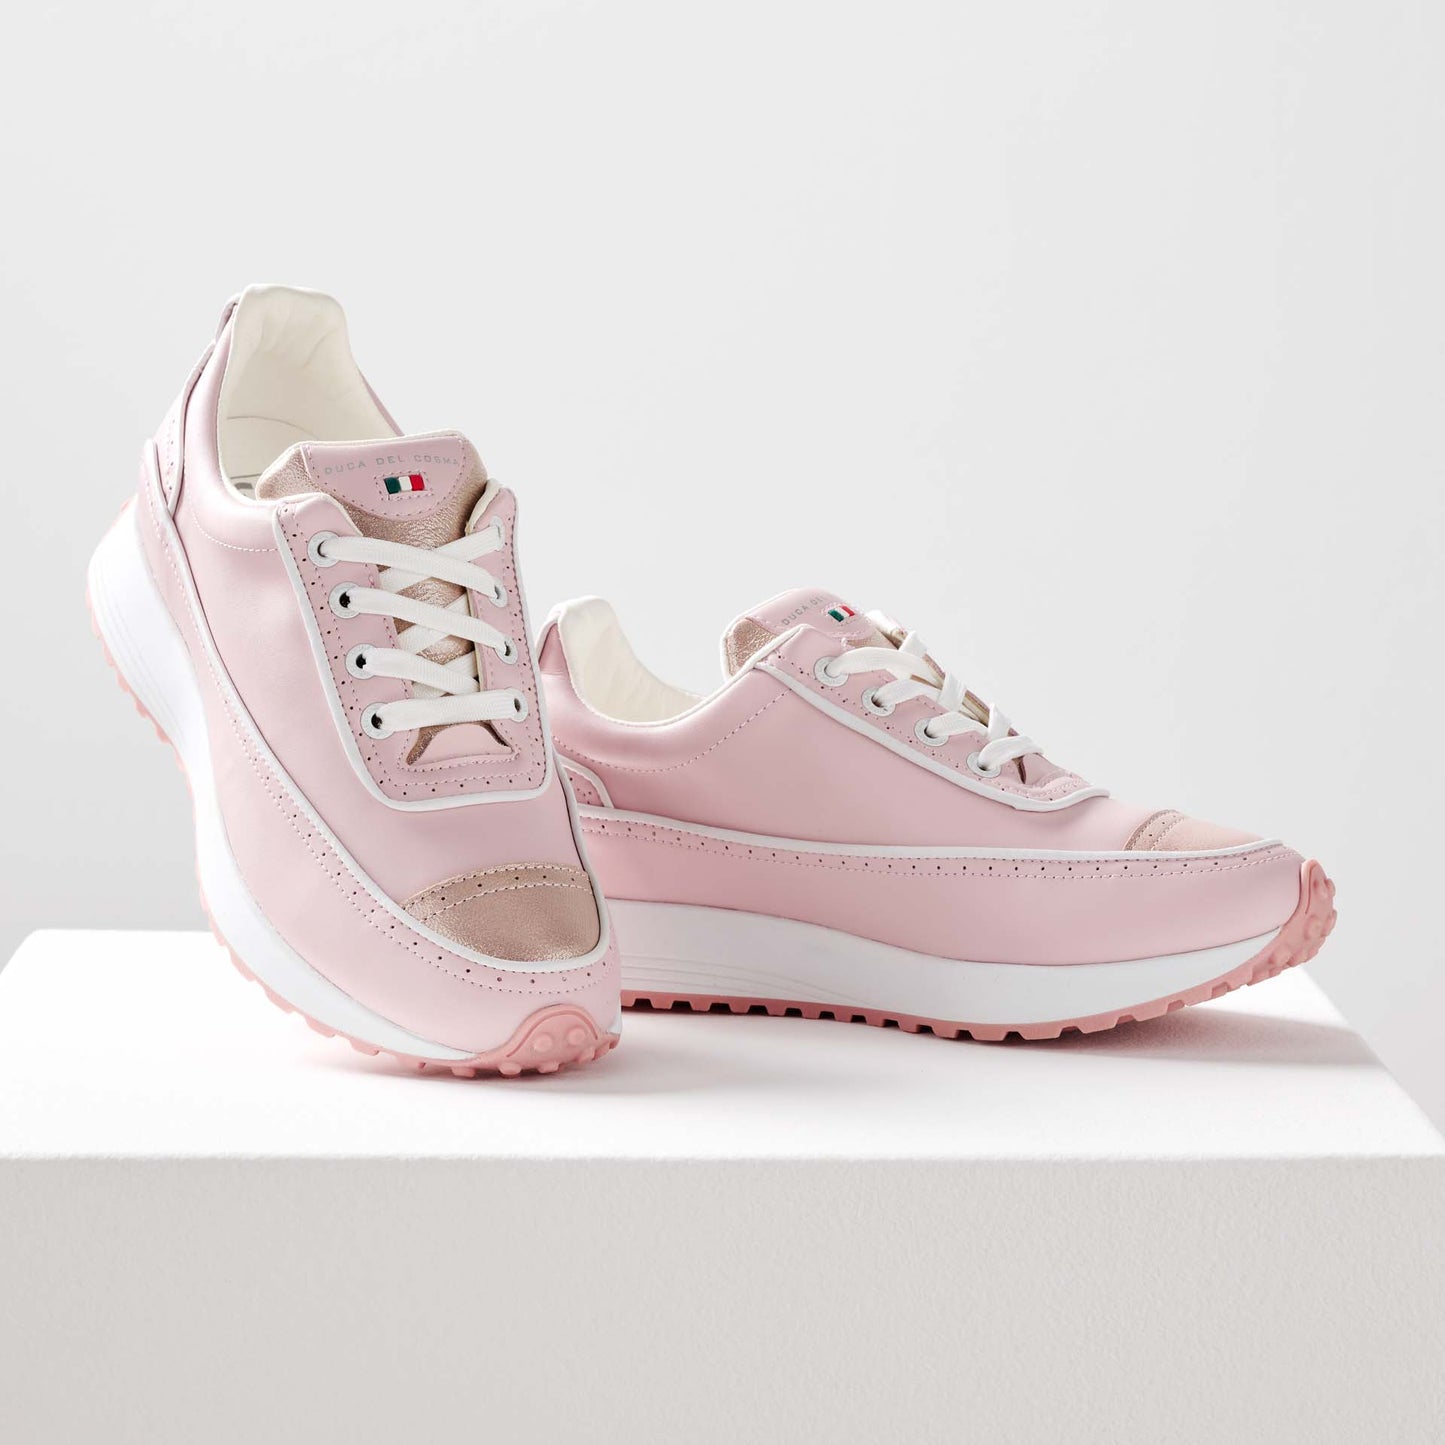 Alexa - Zapatos de golf rosa para mujer